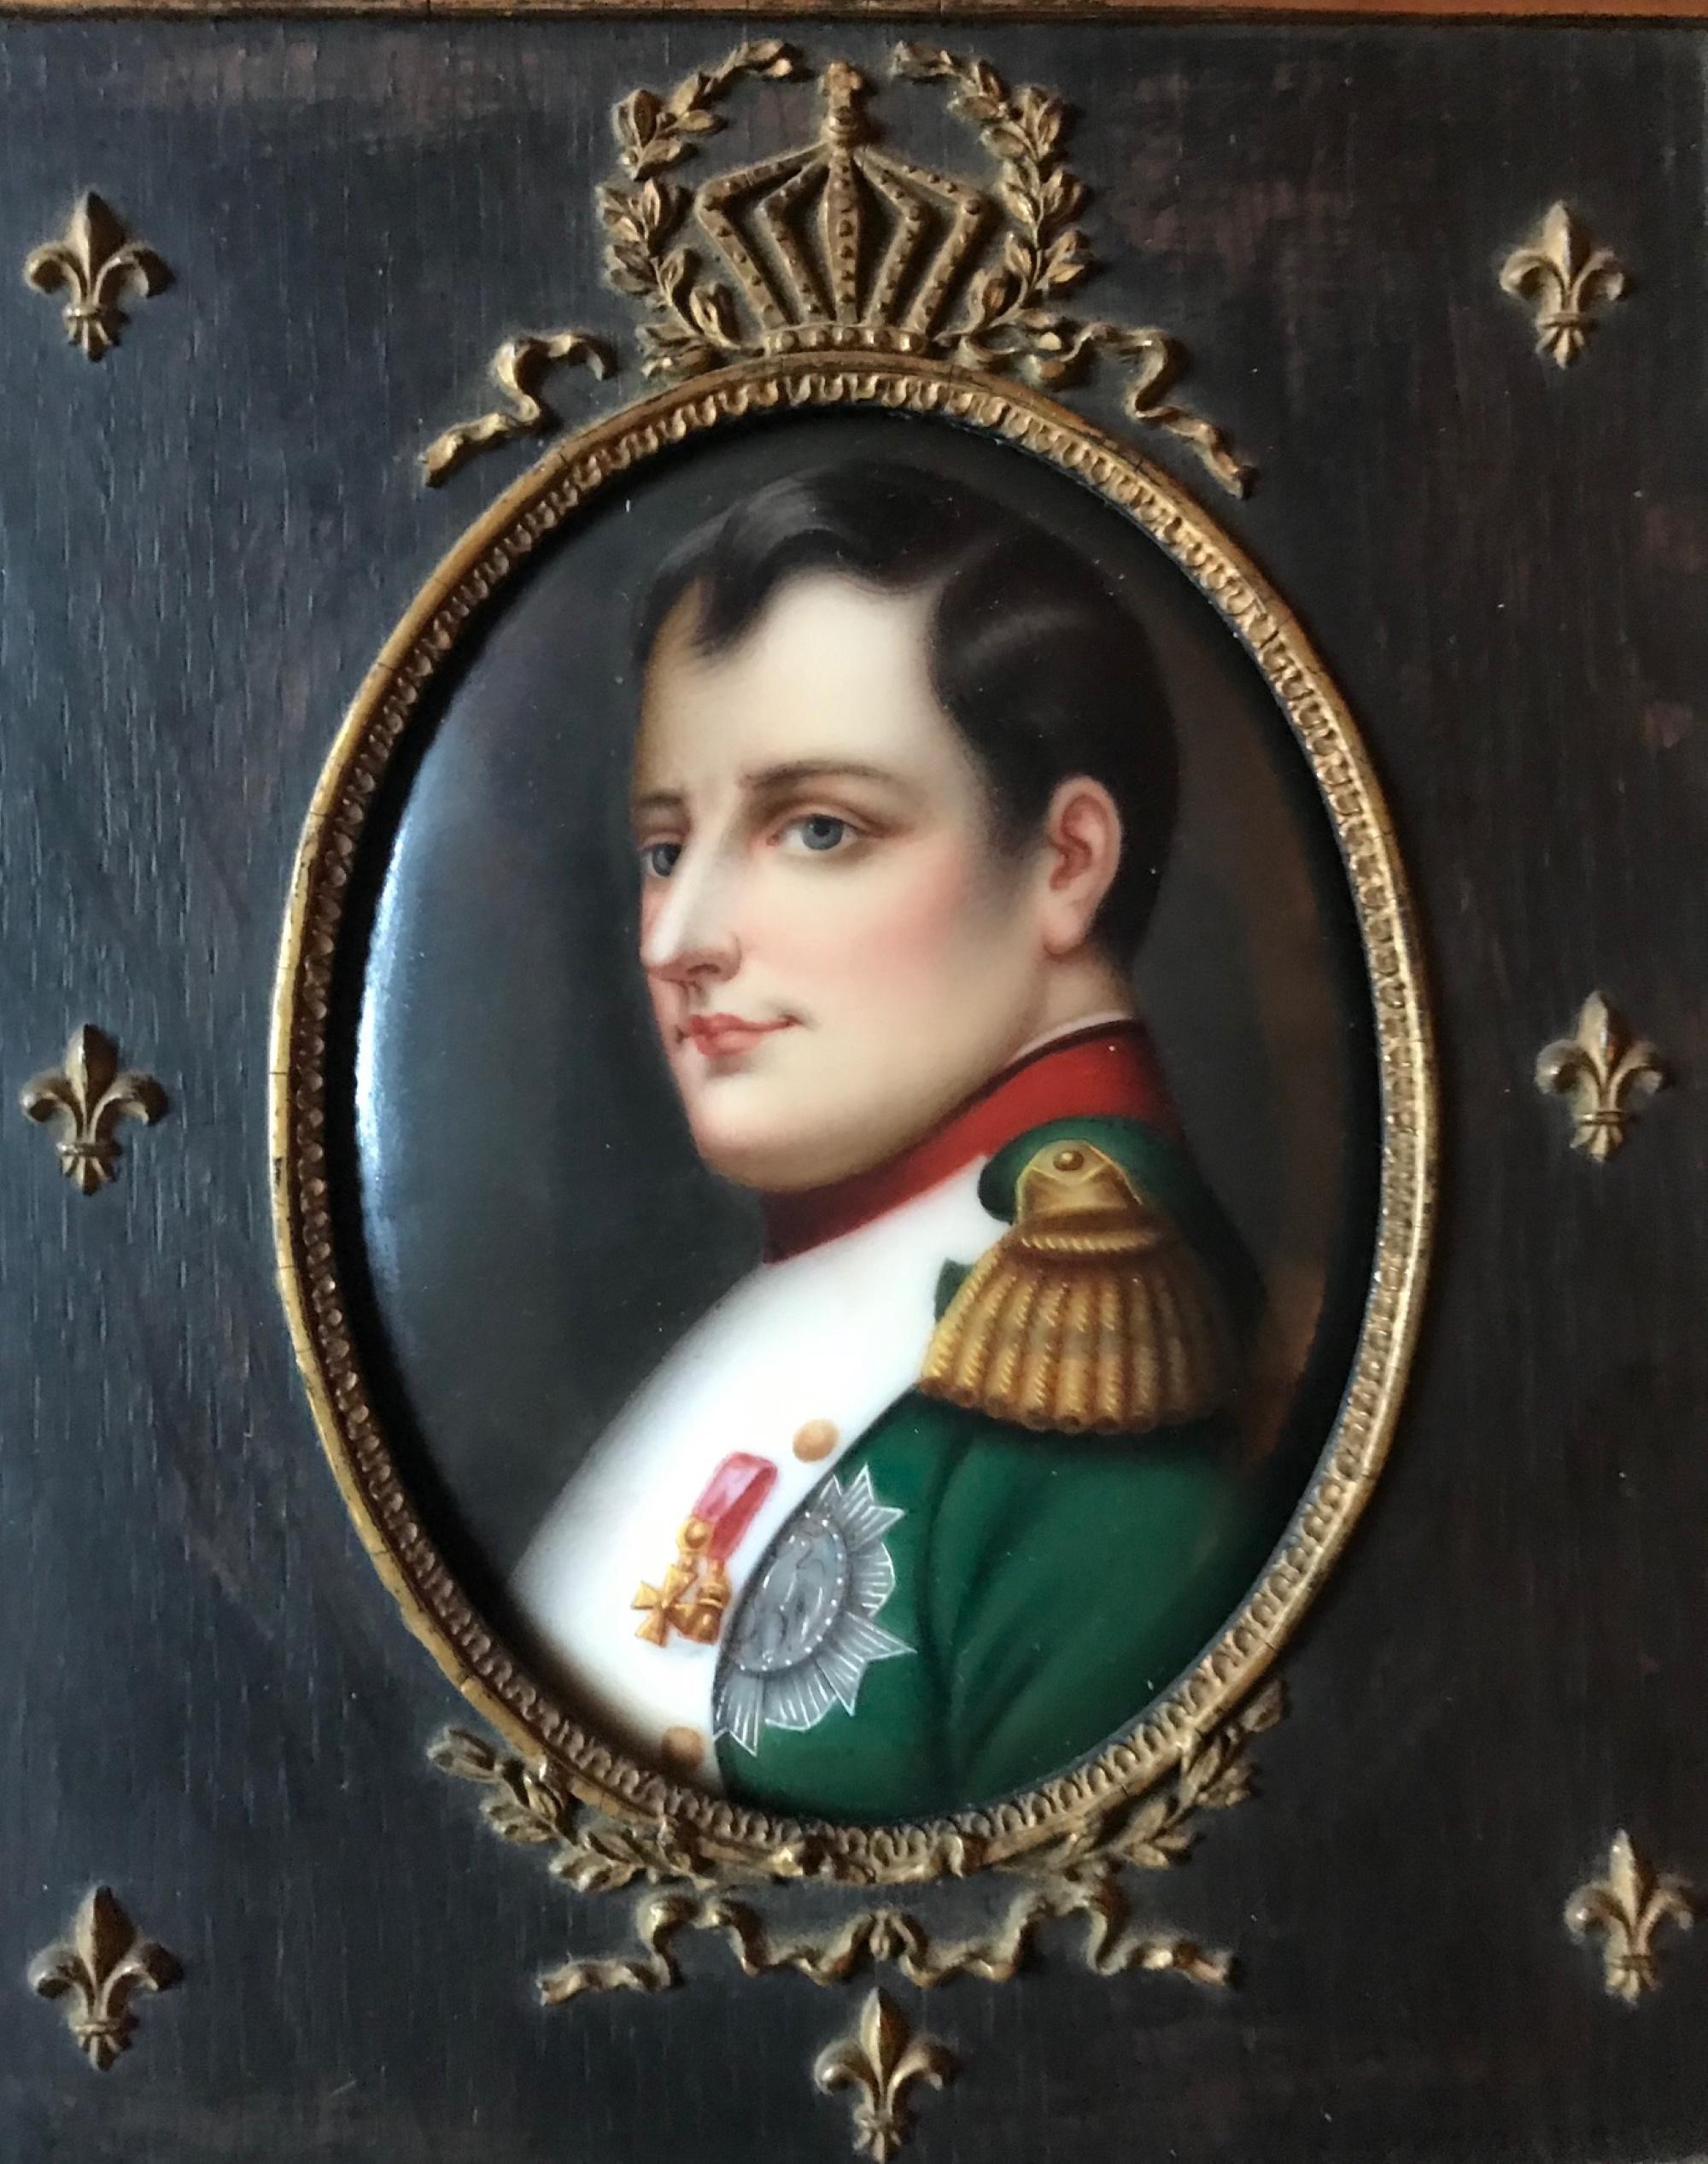 Miniature française du 19ème siècle de Napoléon Ier d'après Paul Delaroche dans un cadre d'époque

Il s'agit d'un portrait miniature sur porcelaine datant de la fin du XIXe siècle, d'après le tableau 